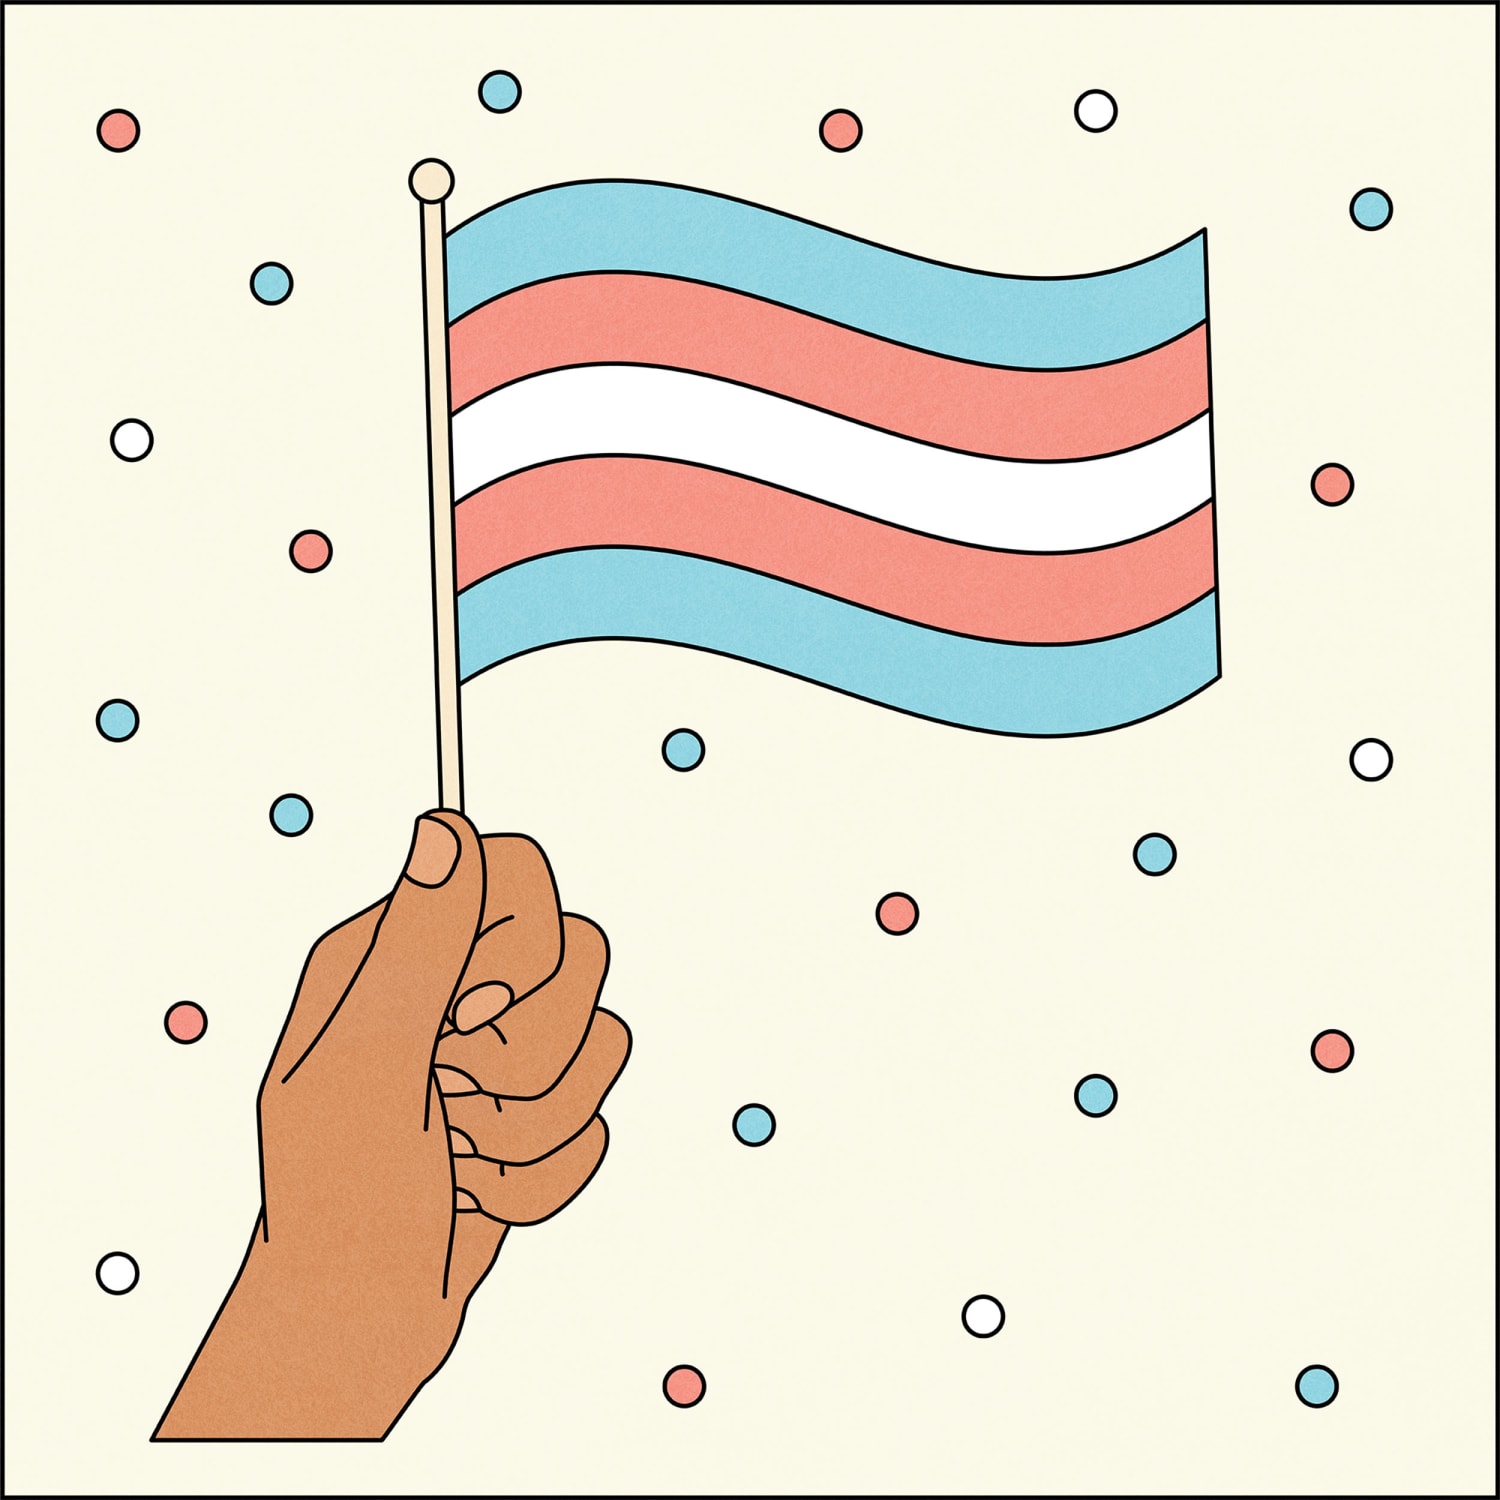 transgender pride flag